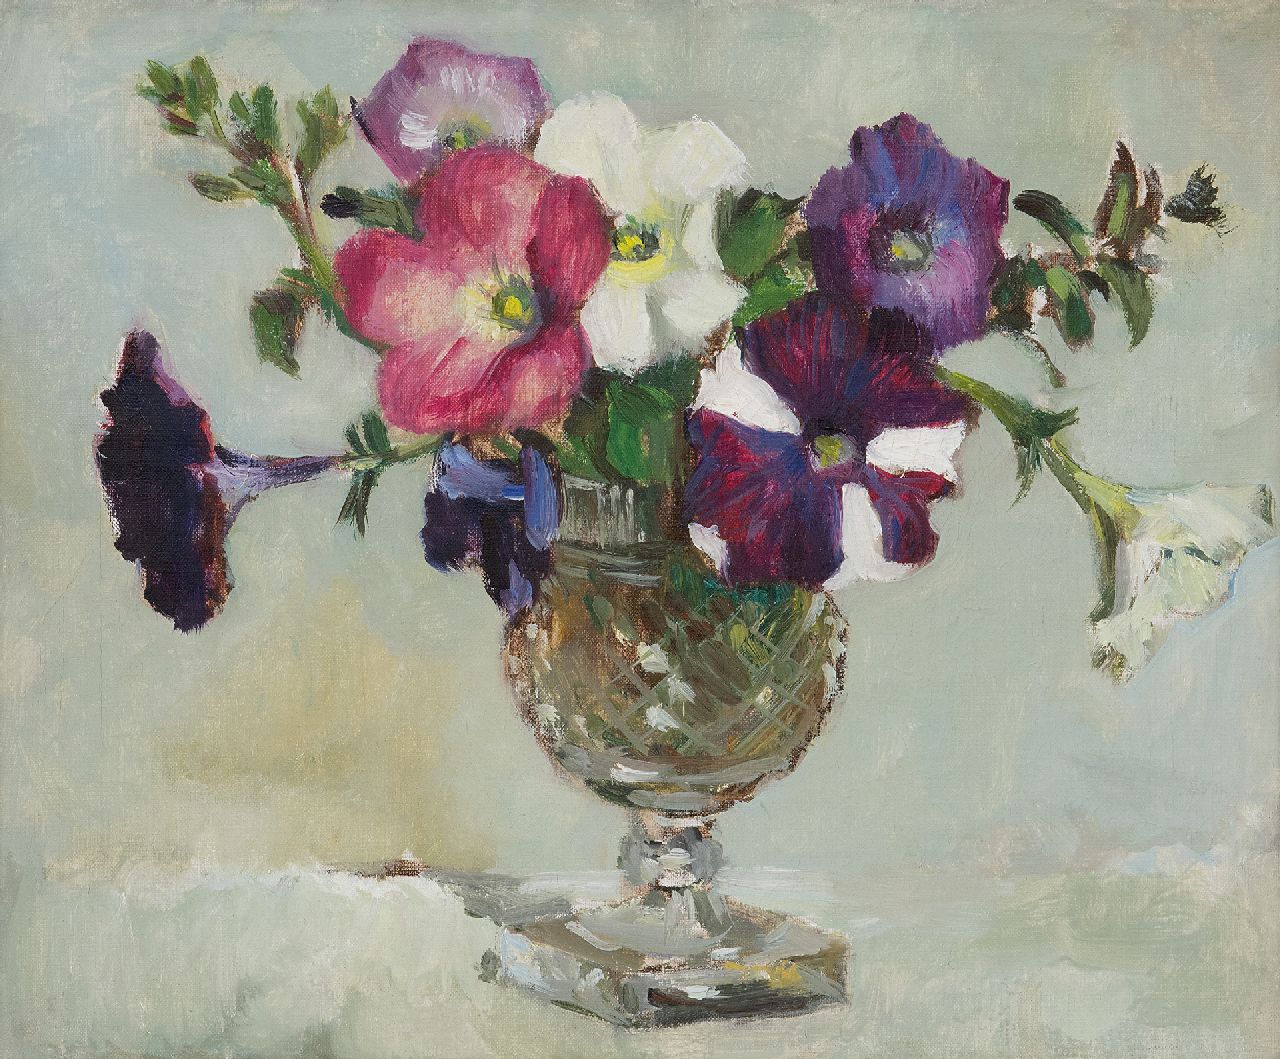 Arntzenius E.C.  | Elise Claudine Arntzenius | Schilderijen te koop aangeboden | Petunia's in een vaas, olieverf op doek 25,2 x 30,2 cm